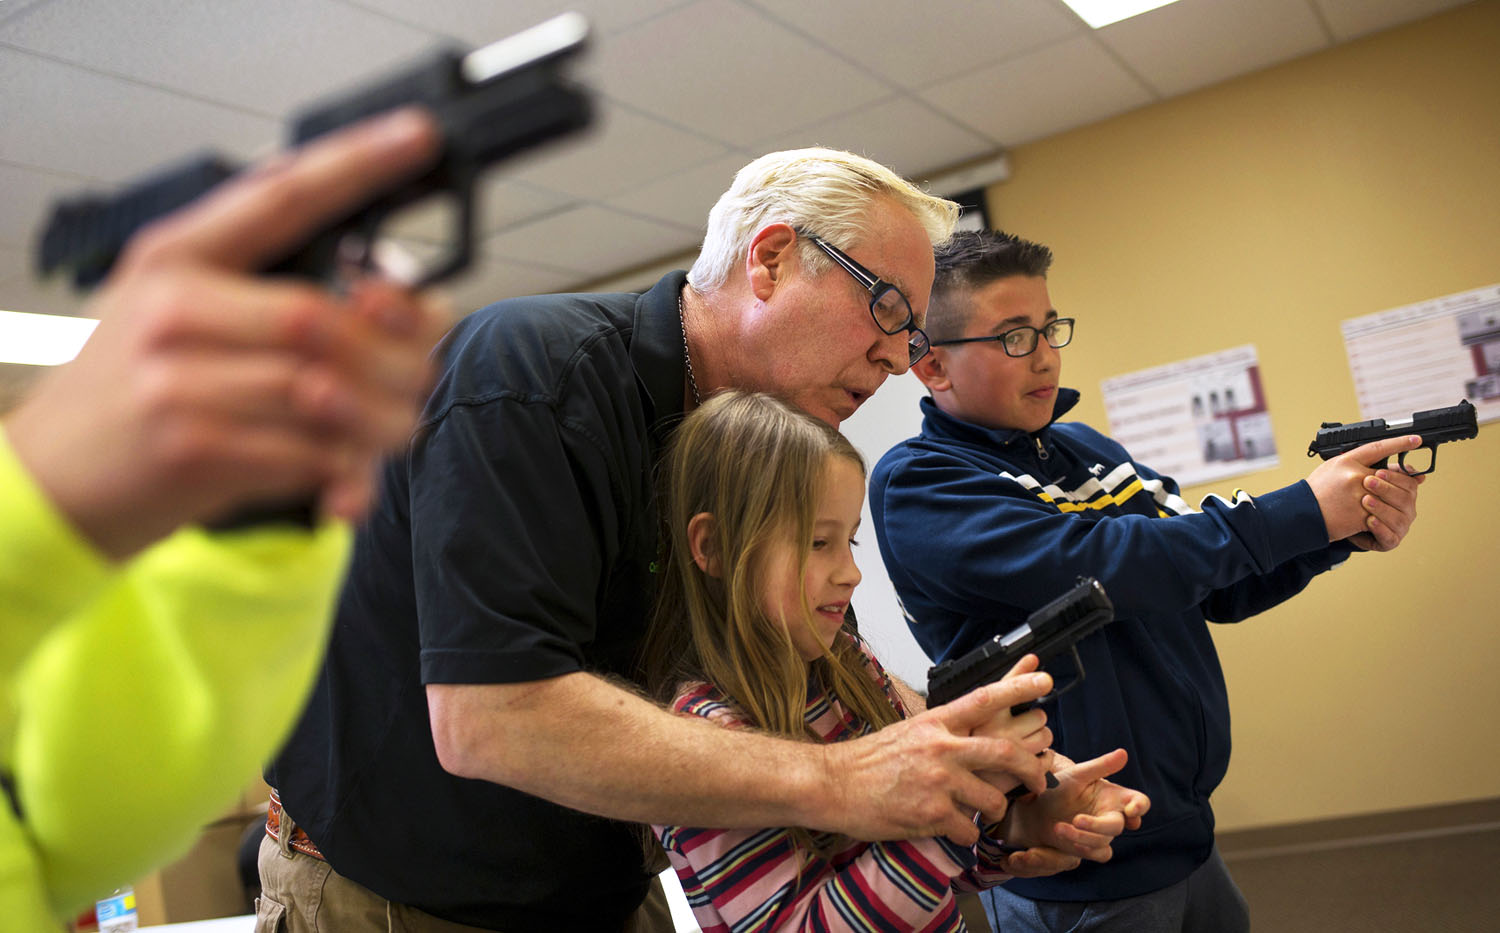 Fegyverbiztonsági foglalkozás gyermekeknek Illinois állam egyik lőterén